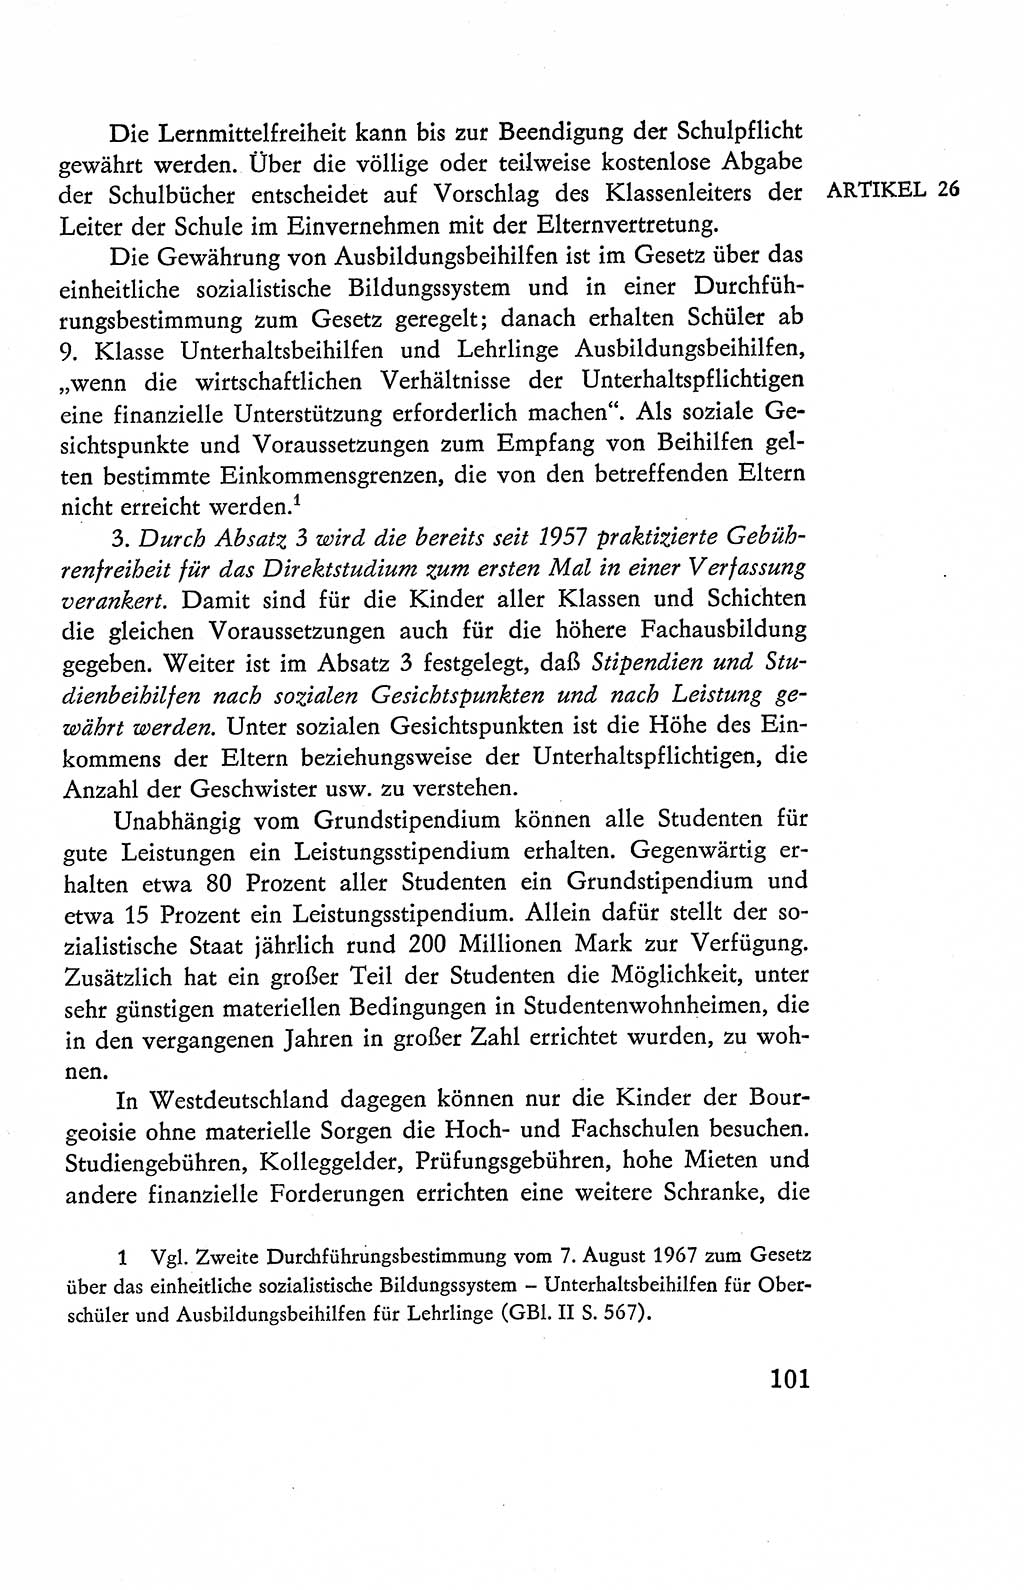 Verfassung der Deutschen Demokratischen Republik (DDR), Dokumente, Kommentar 1969, Band 2, Seite 101 (Verf. DDR Dok. Komm. 1969, Bd. 2, S. 101)